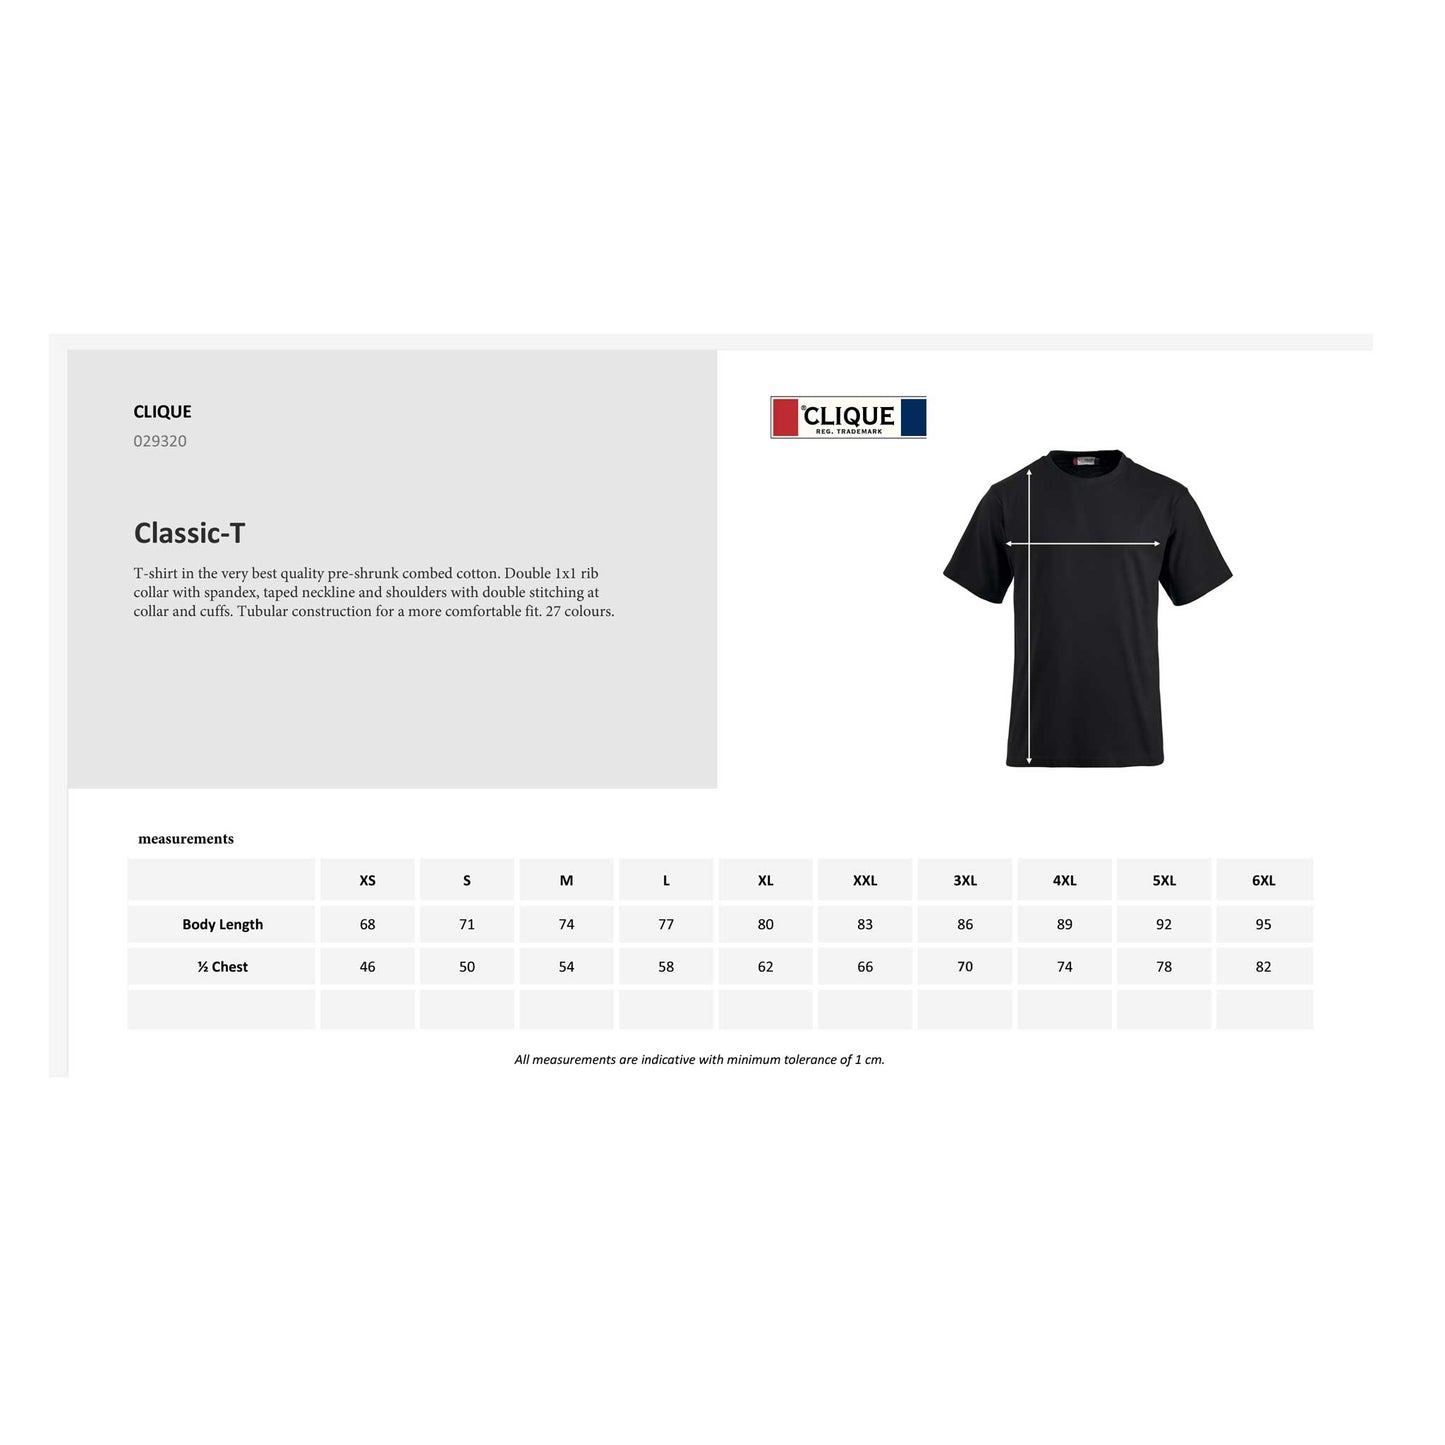 Personalisiertes Unisex T-Shirt – Individuell gestaltbar, ideal für Damen und Herren